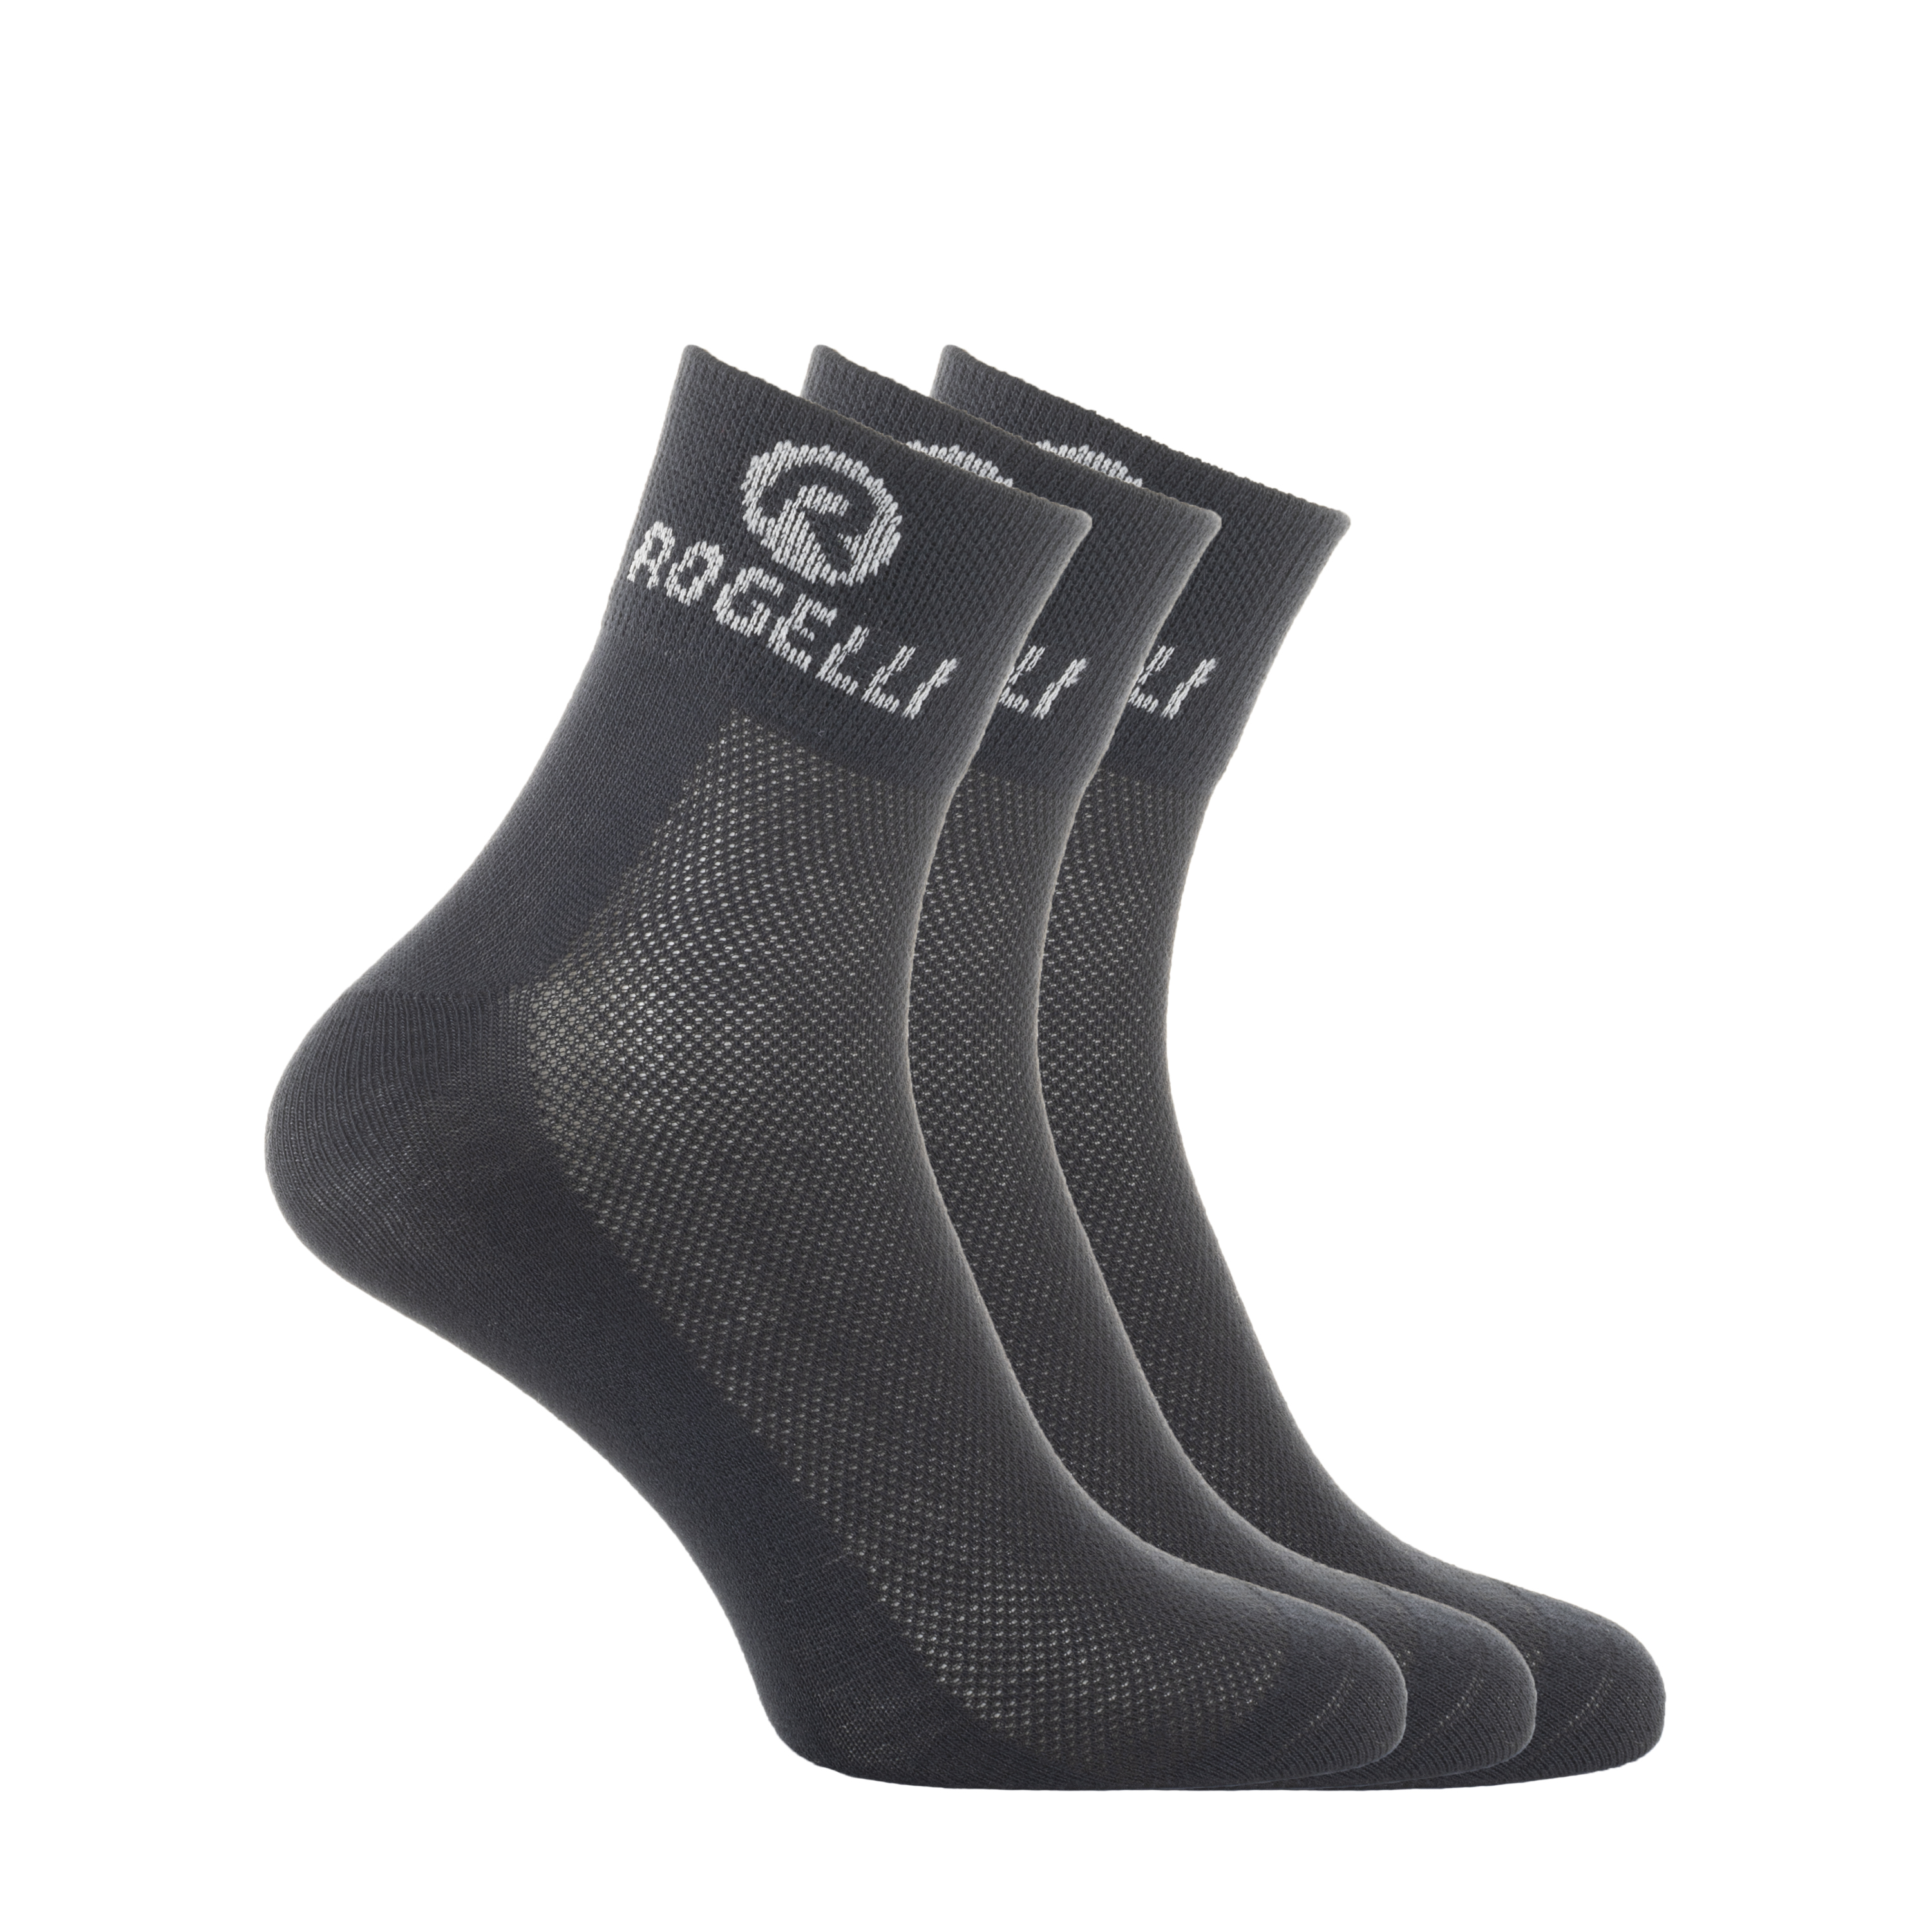 Promo Socks 3 - pack